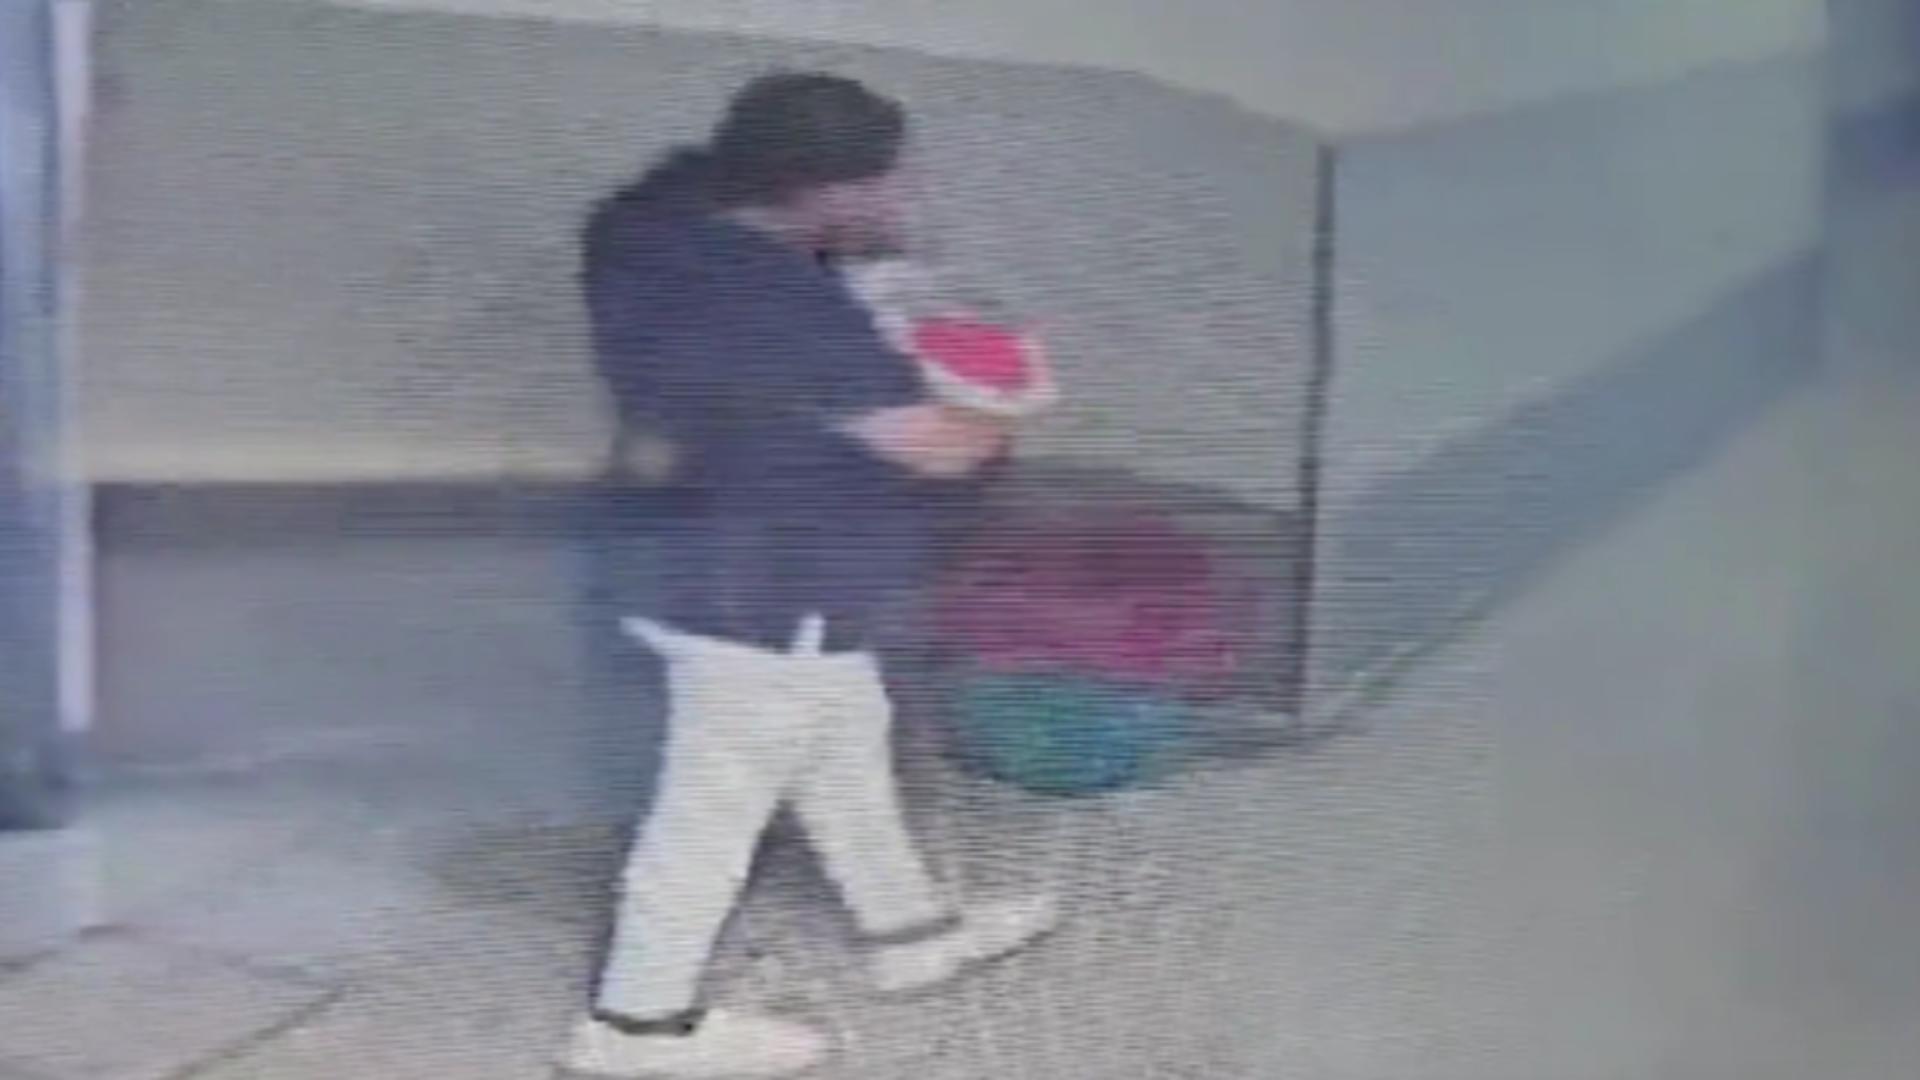 Șocant: o femeie deghizată în asistentă a furat un bebeluș dintr-o maternitate din Mexic. Micuțul, băgat într-un ghiozdan